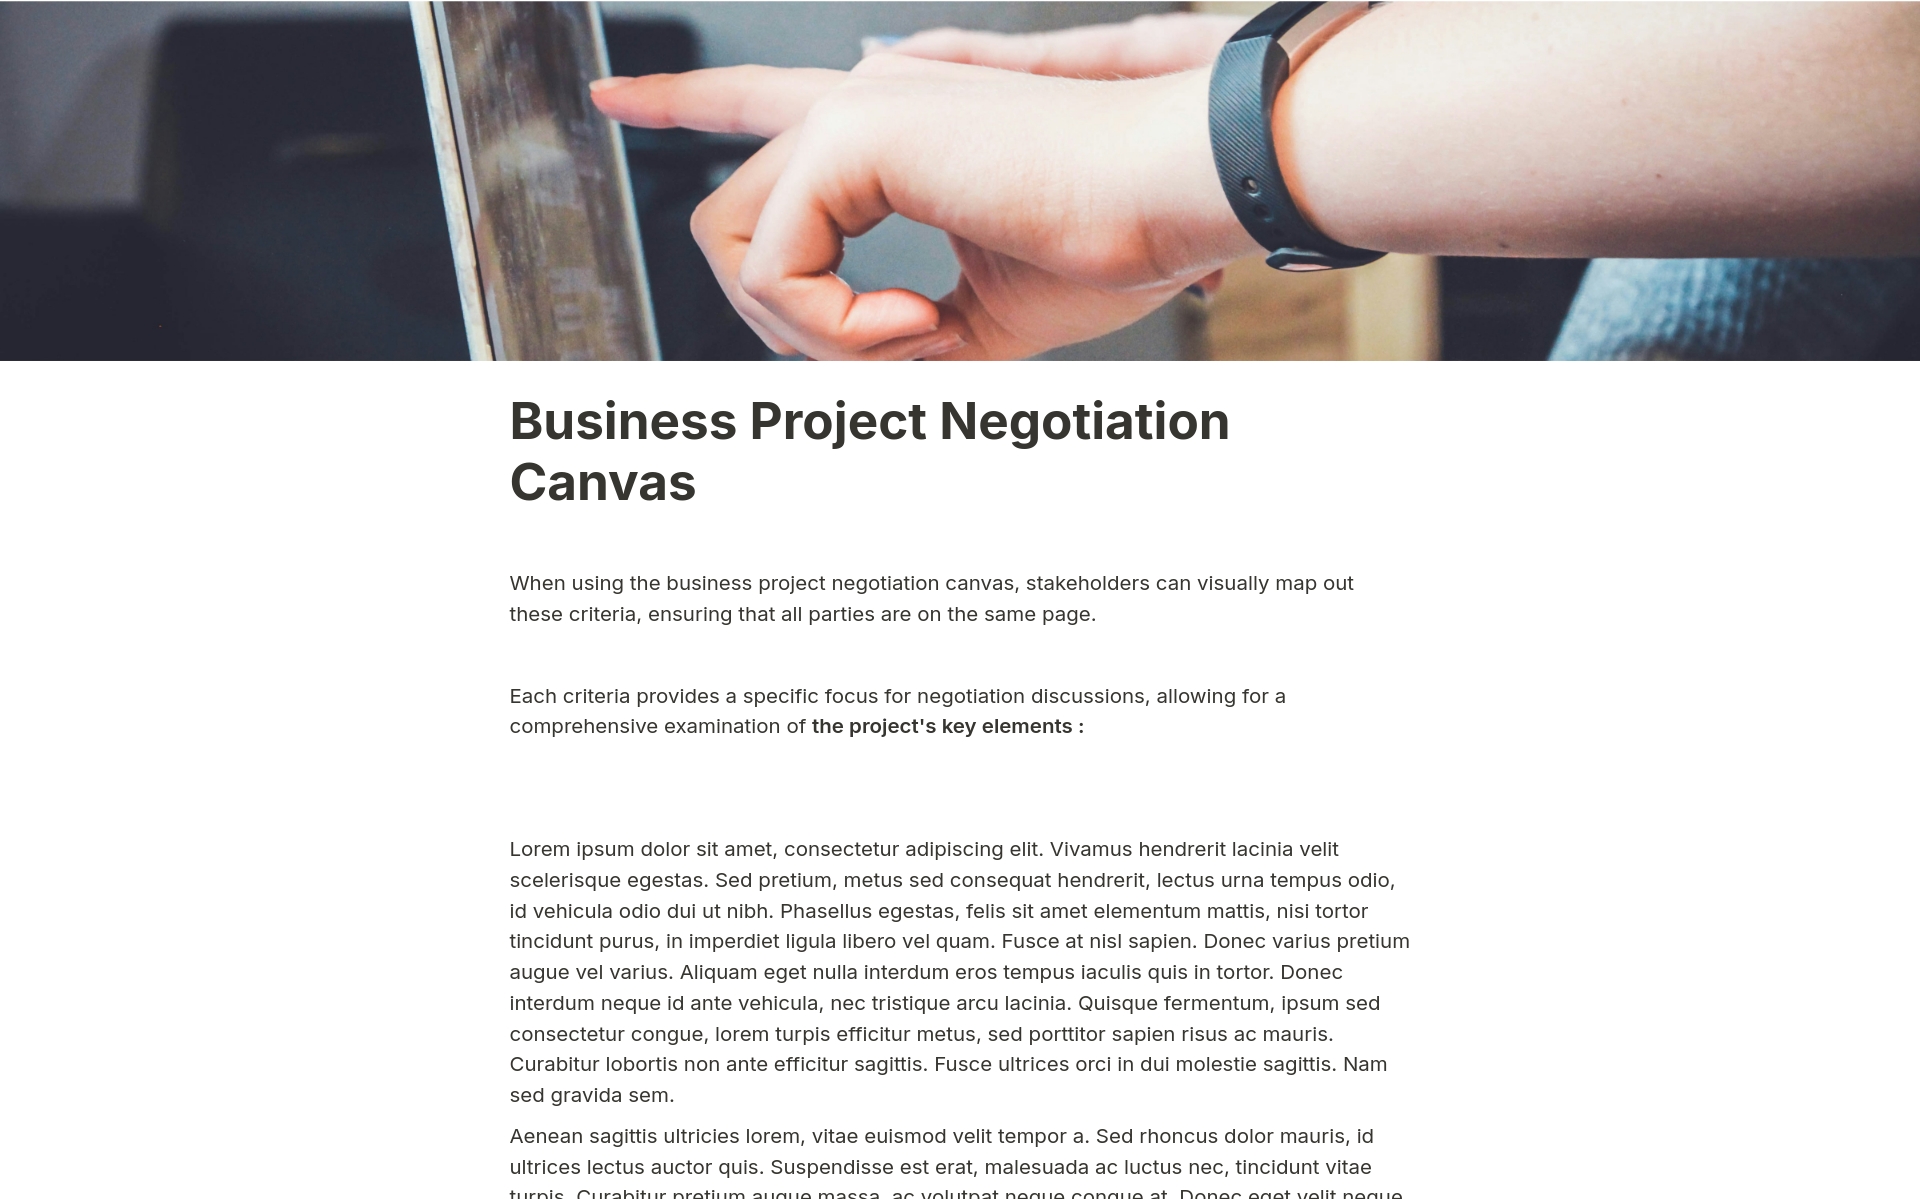 En förhandsgranskning av mallen för Business Project Negotiation Canvas